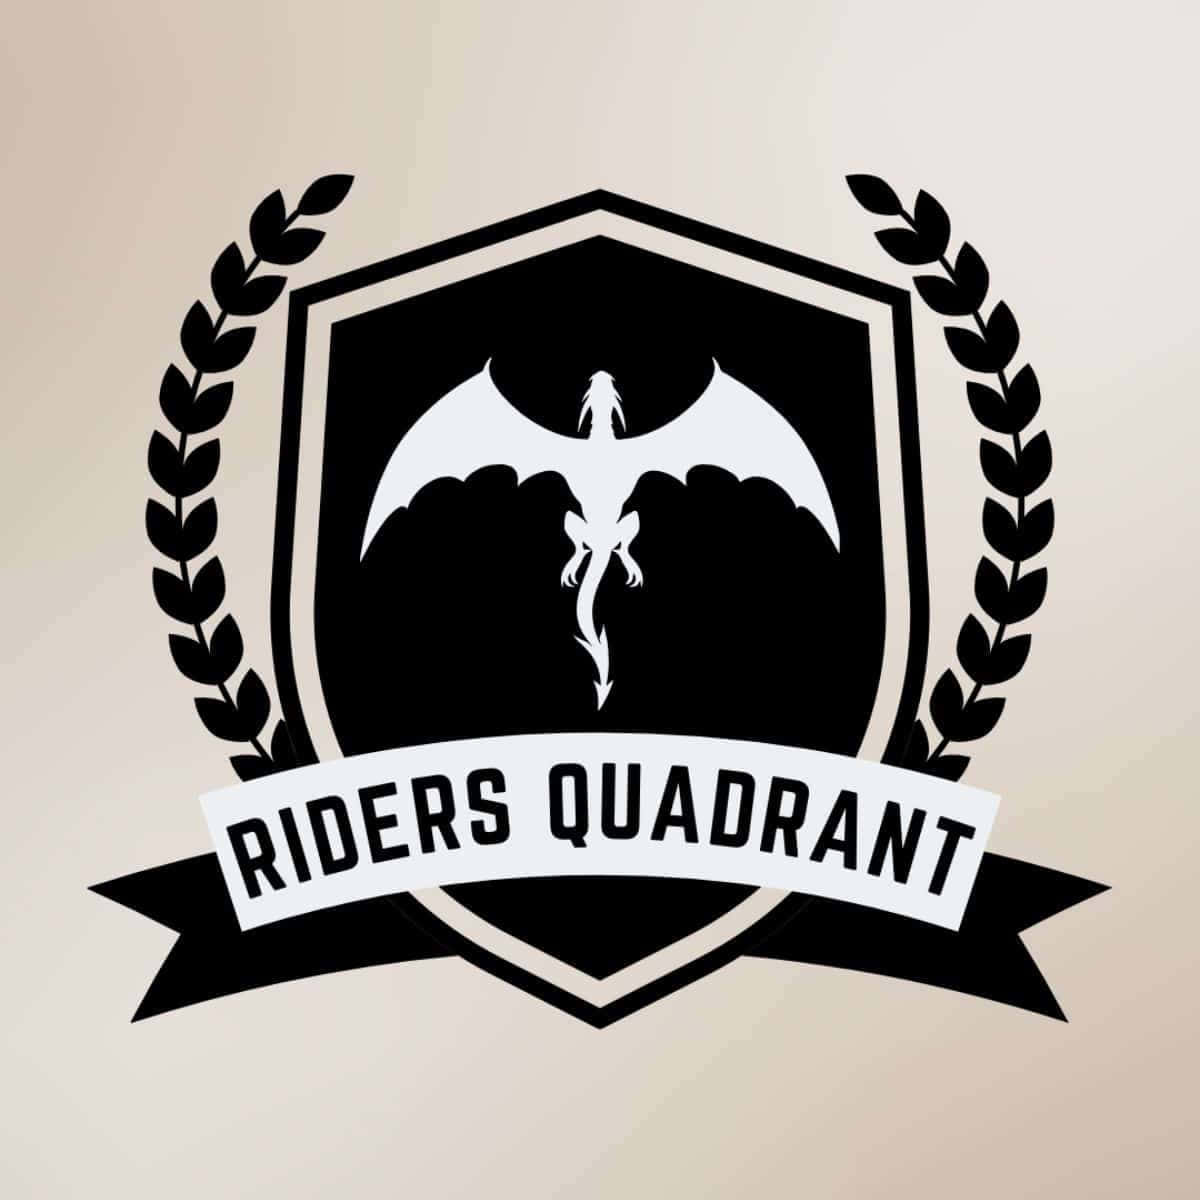 Riders Quadrant Emblem Wallpaper